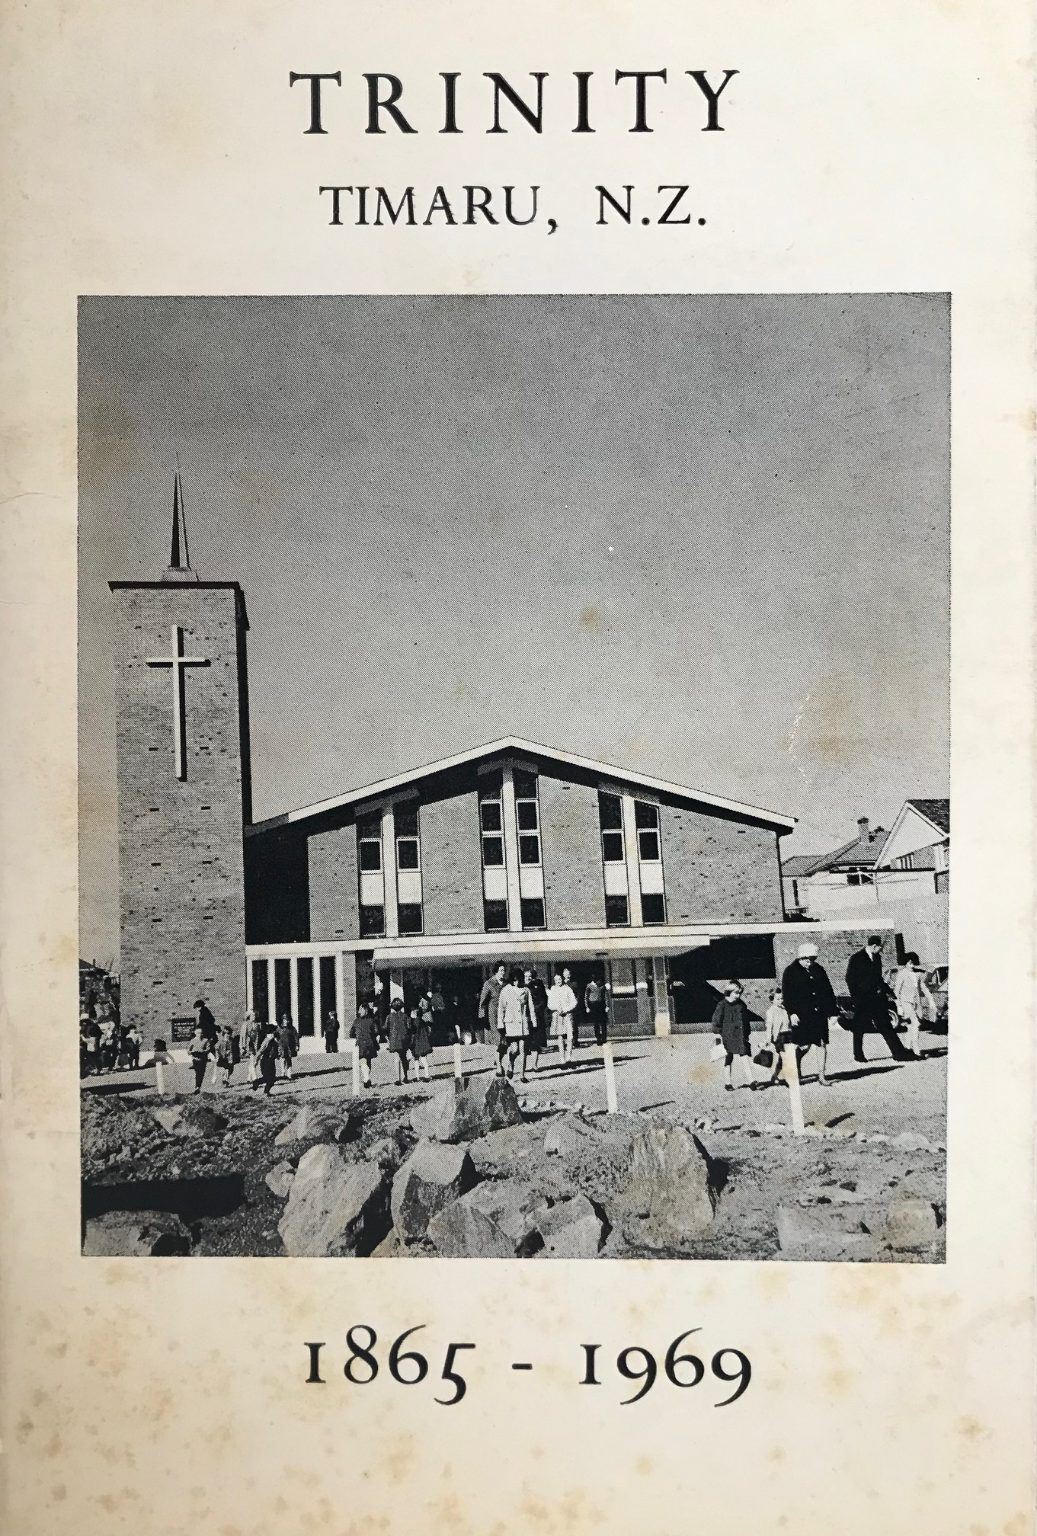 TRINITY PRESBYTERIAN CHURCH: Timaru NZ 1865 - 1969